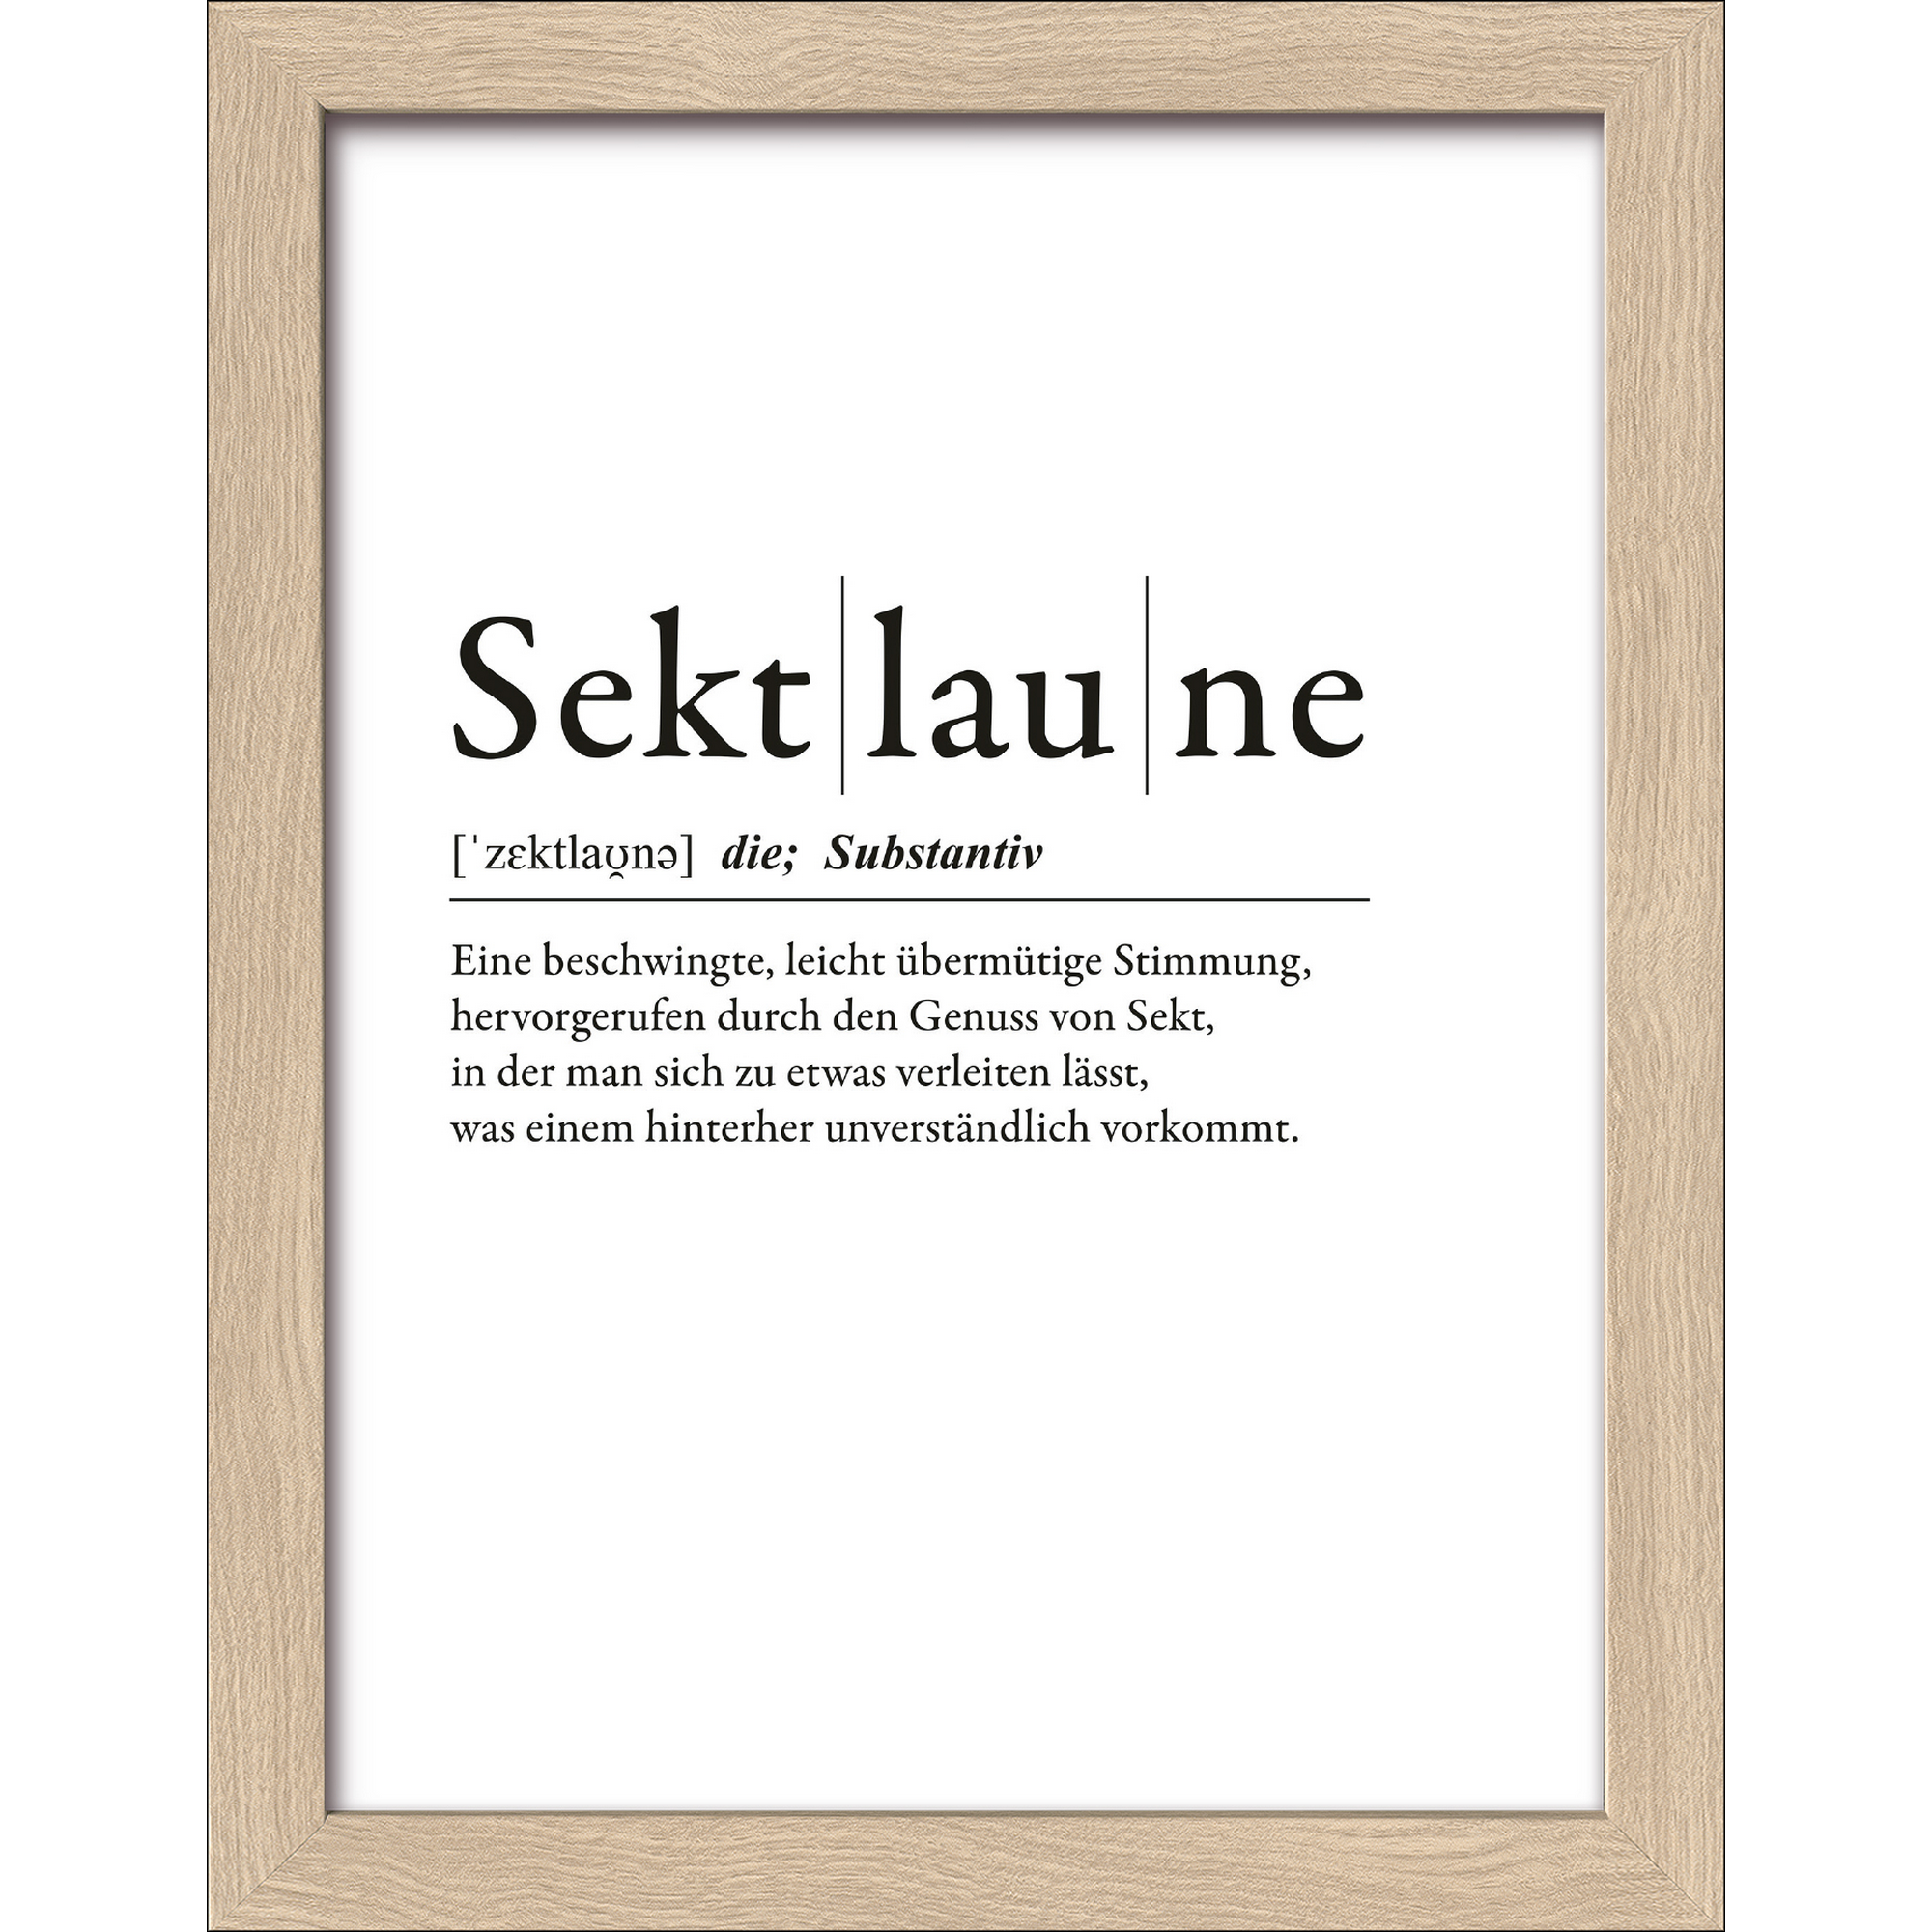 Kunstdruck Framed-Art 'Sektlaune' 19 x 24 cm + product picture